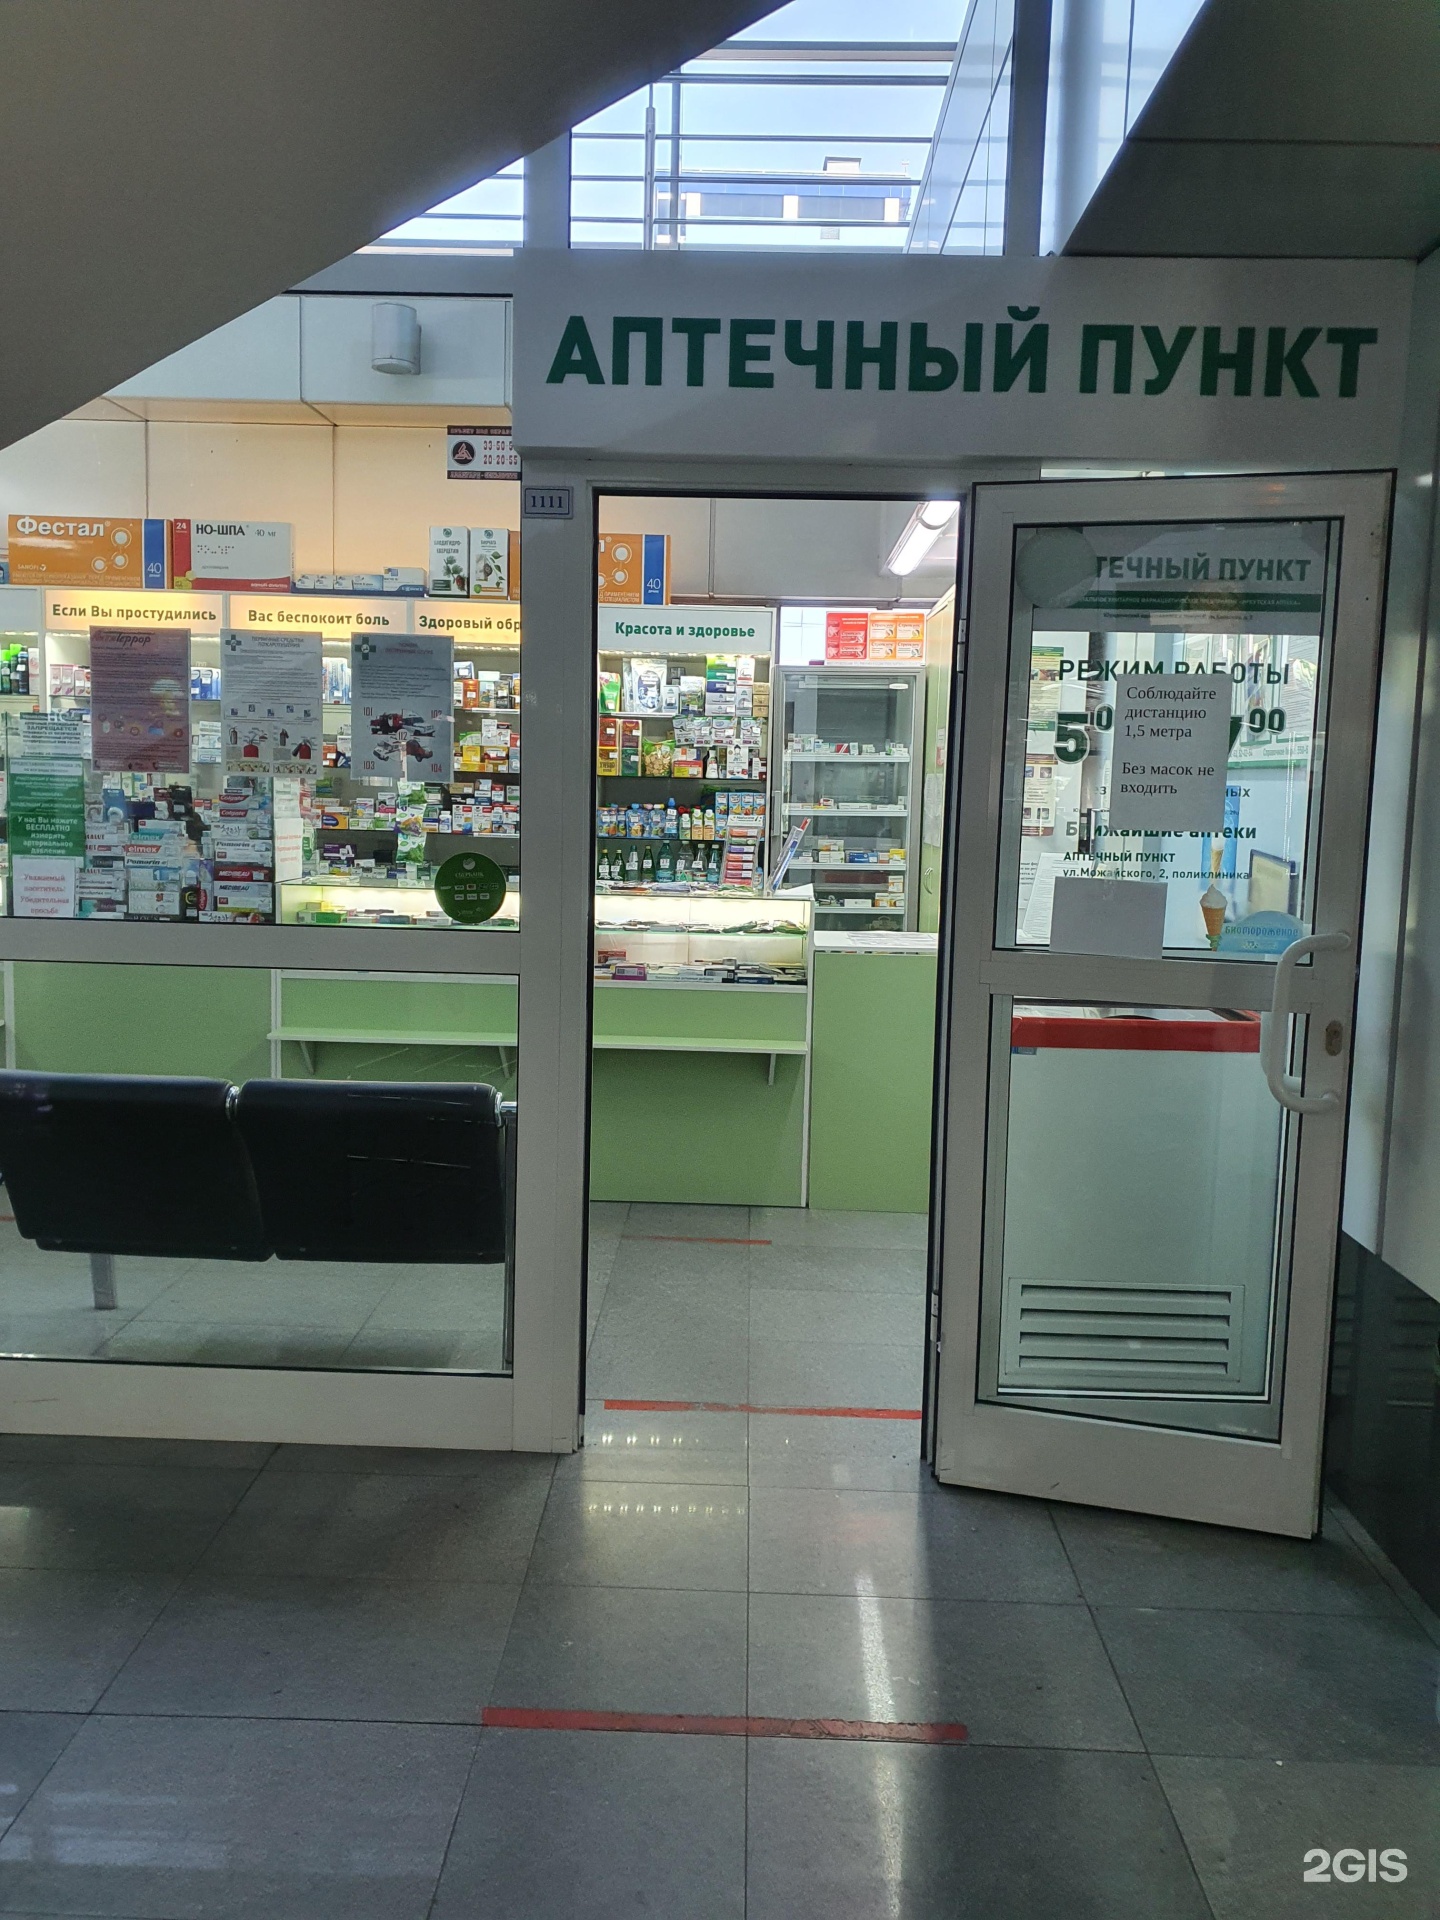 Иркутская аптека. Справочная аптек в Иркутске. Муниципальная аптека Иркутск. Аптека в аэропорту. Асна иркутск